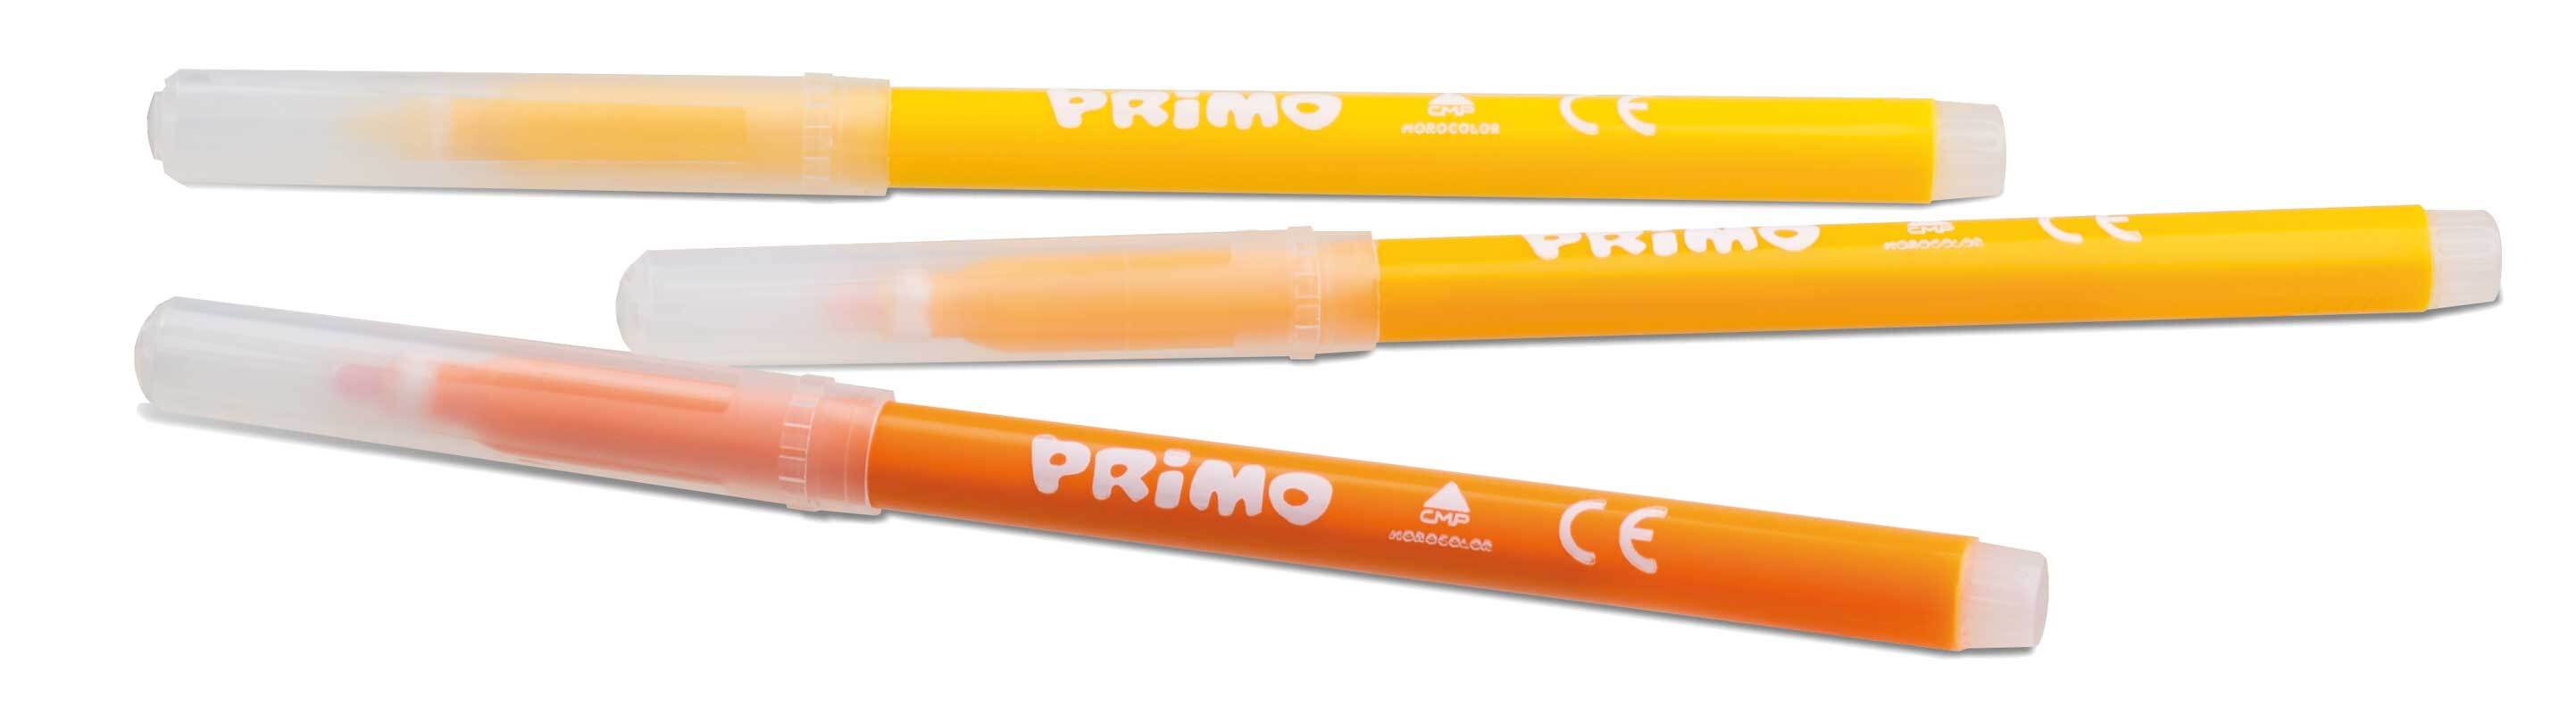 Primo schoolbox met viltstiften 120 stuk